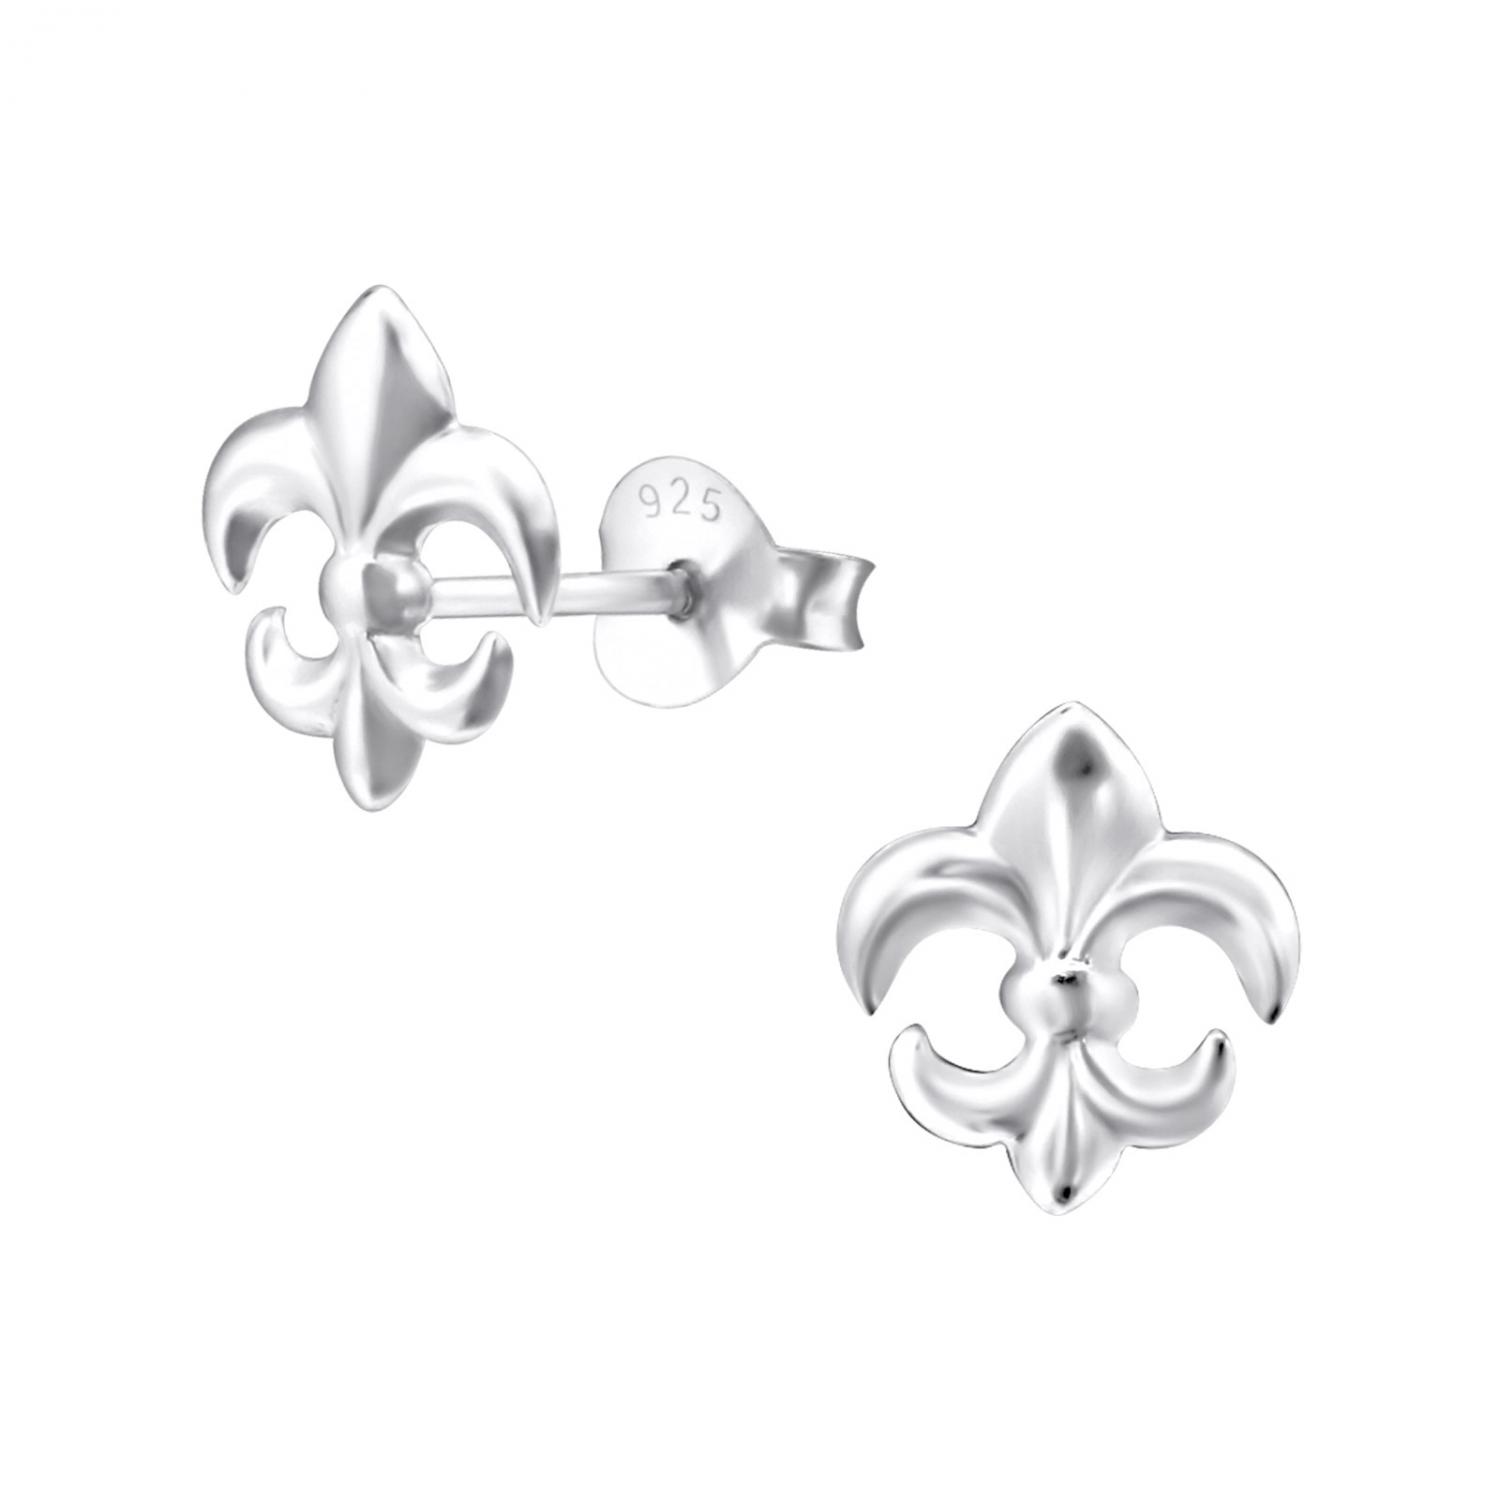 Fransk lilja - Studs - Örhängen i äkta silver